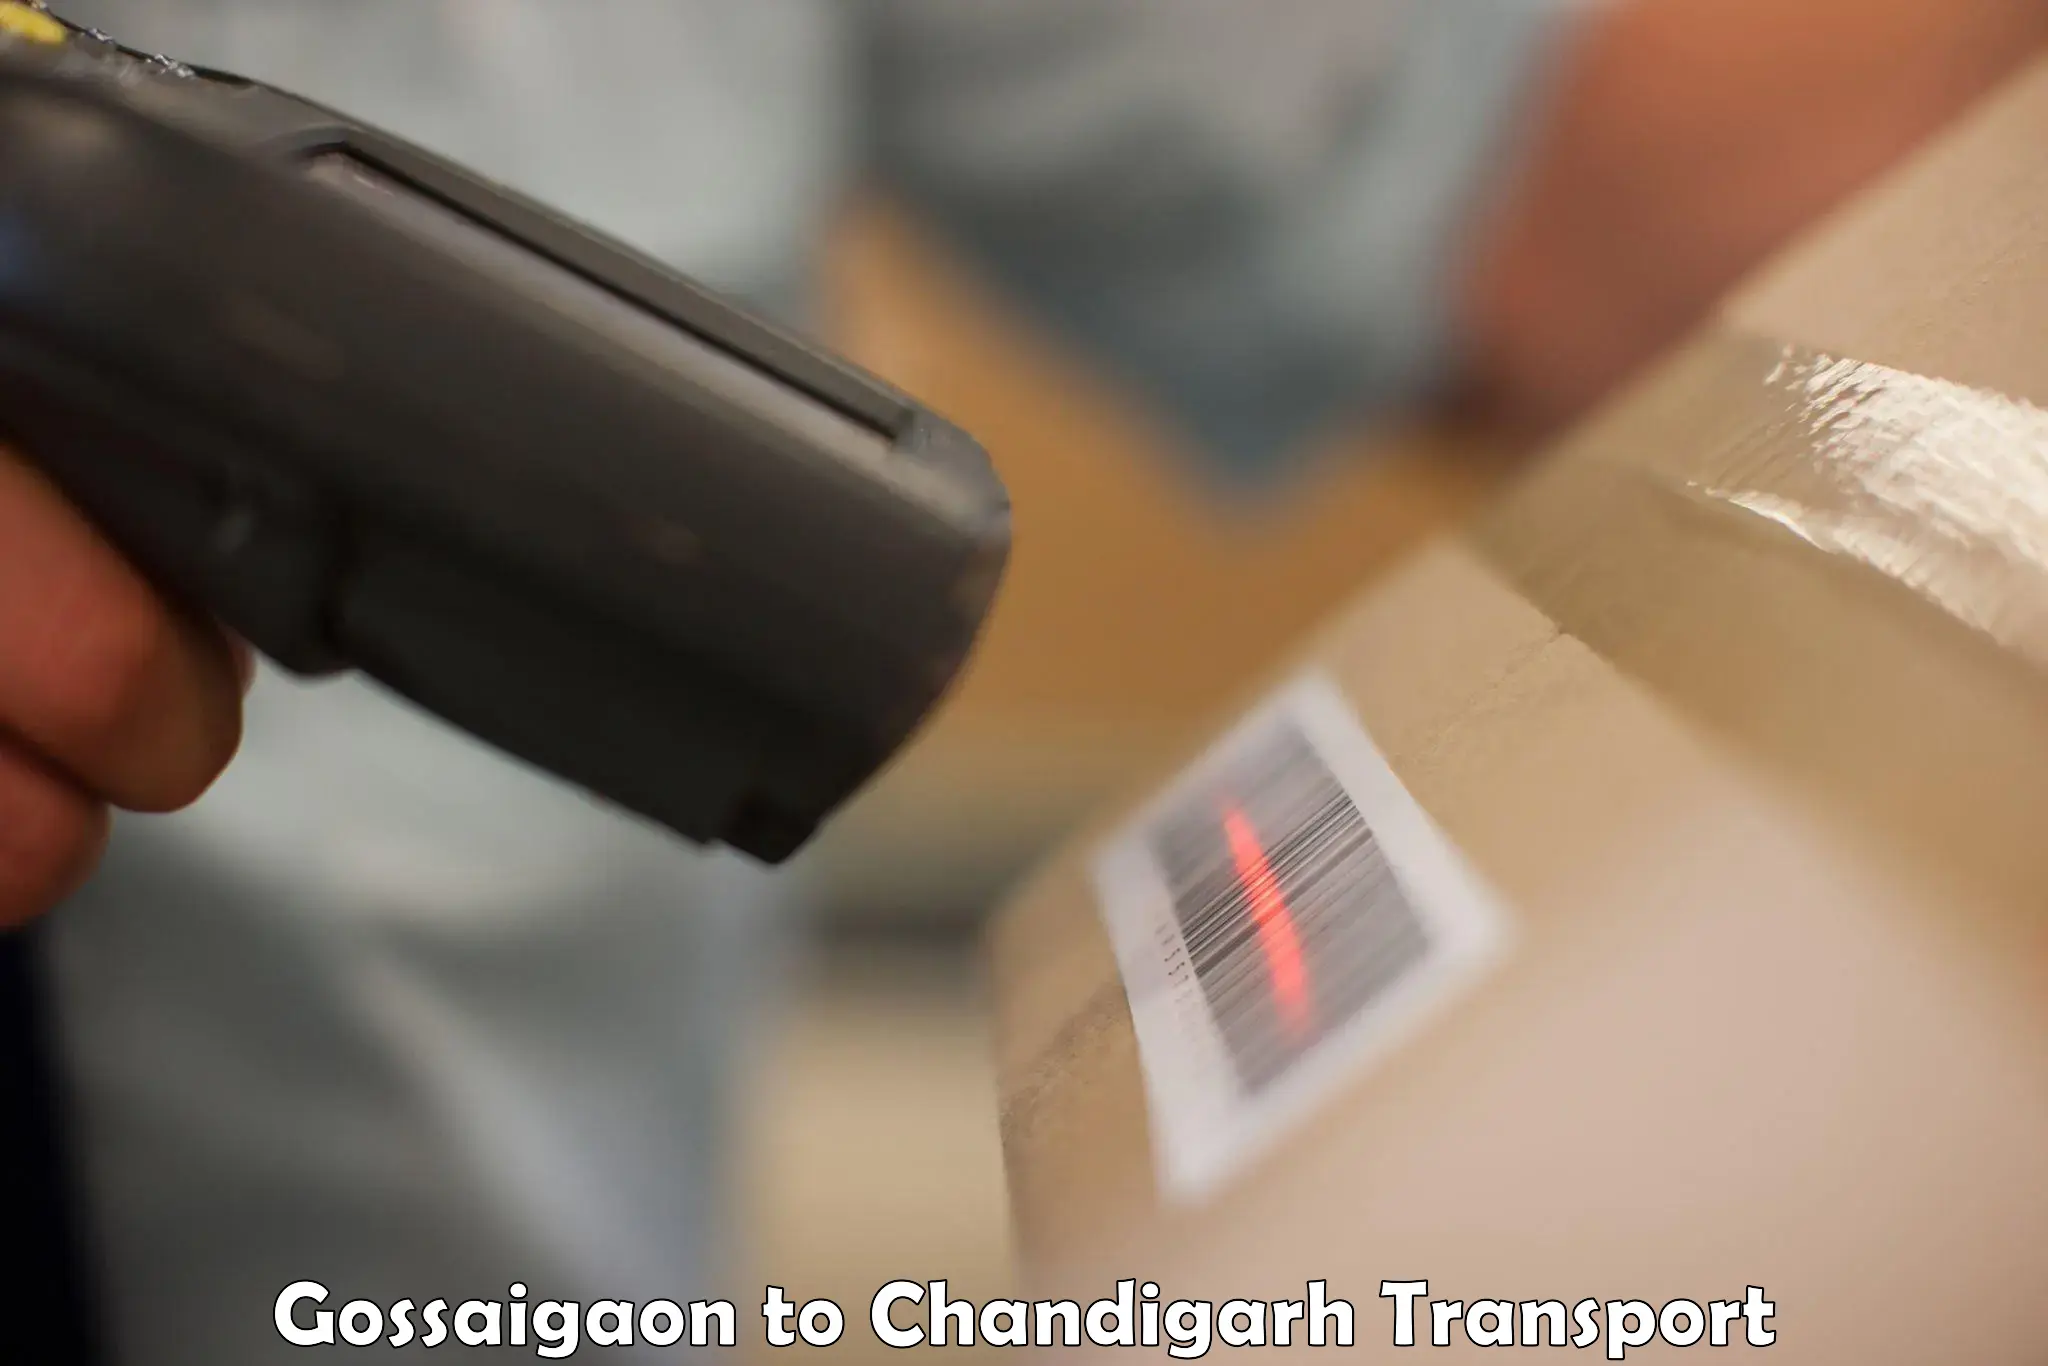 Land transport services Gossaigaon to Chandigarh